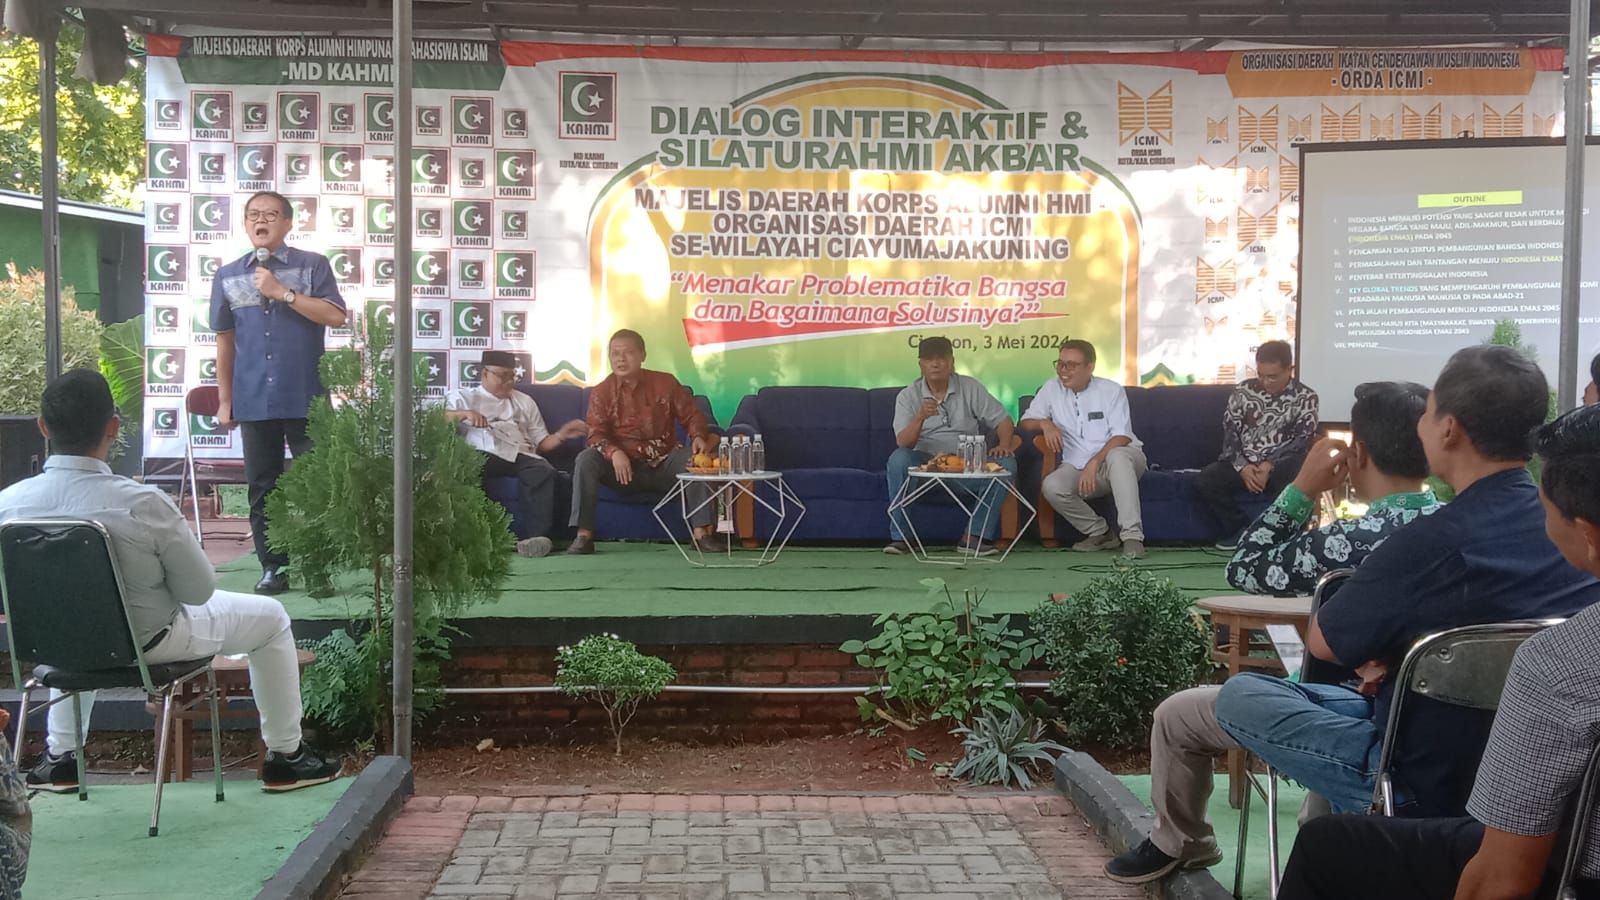 Rokhmin Dahuri saat menjadi narasumber utama pada dialog interaktif dan silaturahmi akbar bersama Majelis Daerah Korps Alumni HMI-Organisasi Daerah ICMI se wilayah Cirebon, Indramayu, Majalengka, dan Kuningan (Ciayumajakuning) di salah satu kafe di Kompleks Stadion Bima Kota Cirebon, Jawa Barat.*